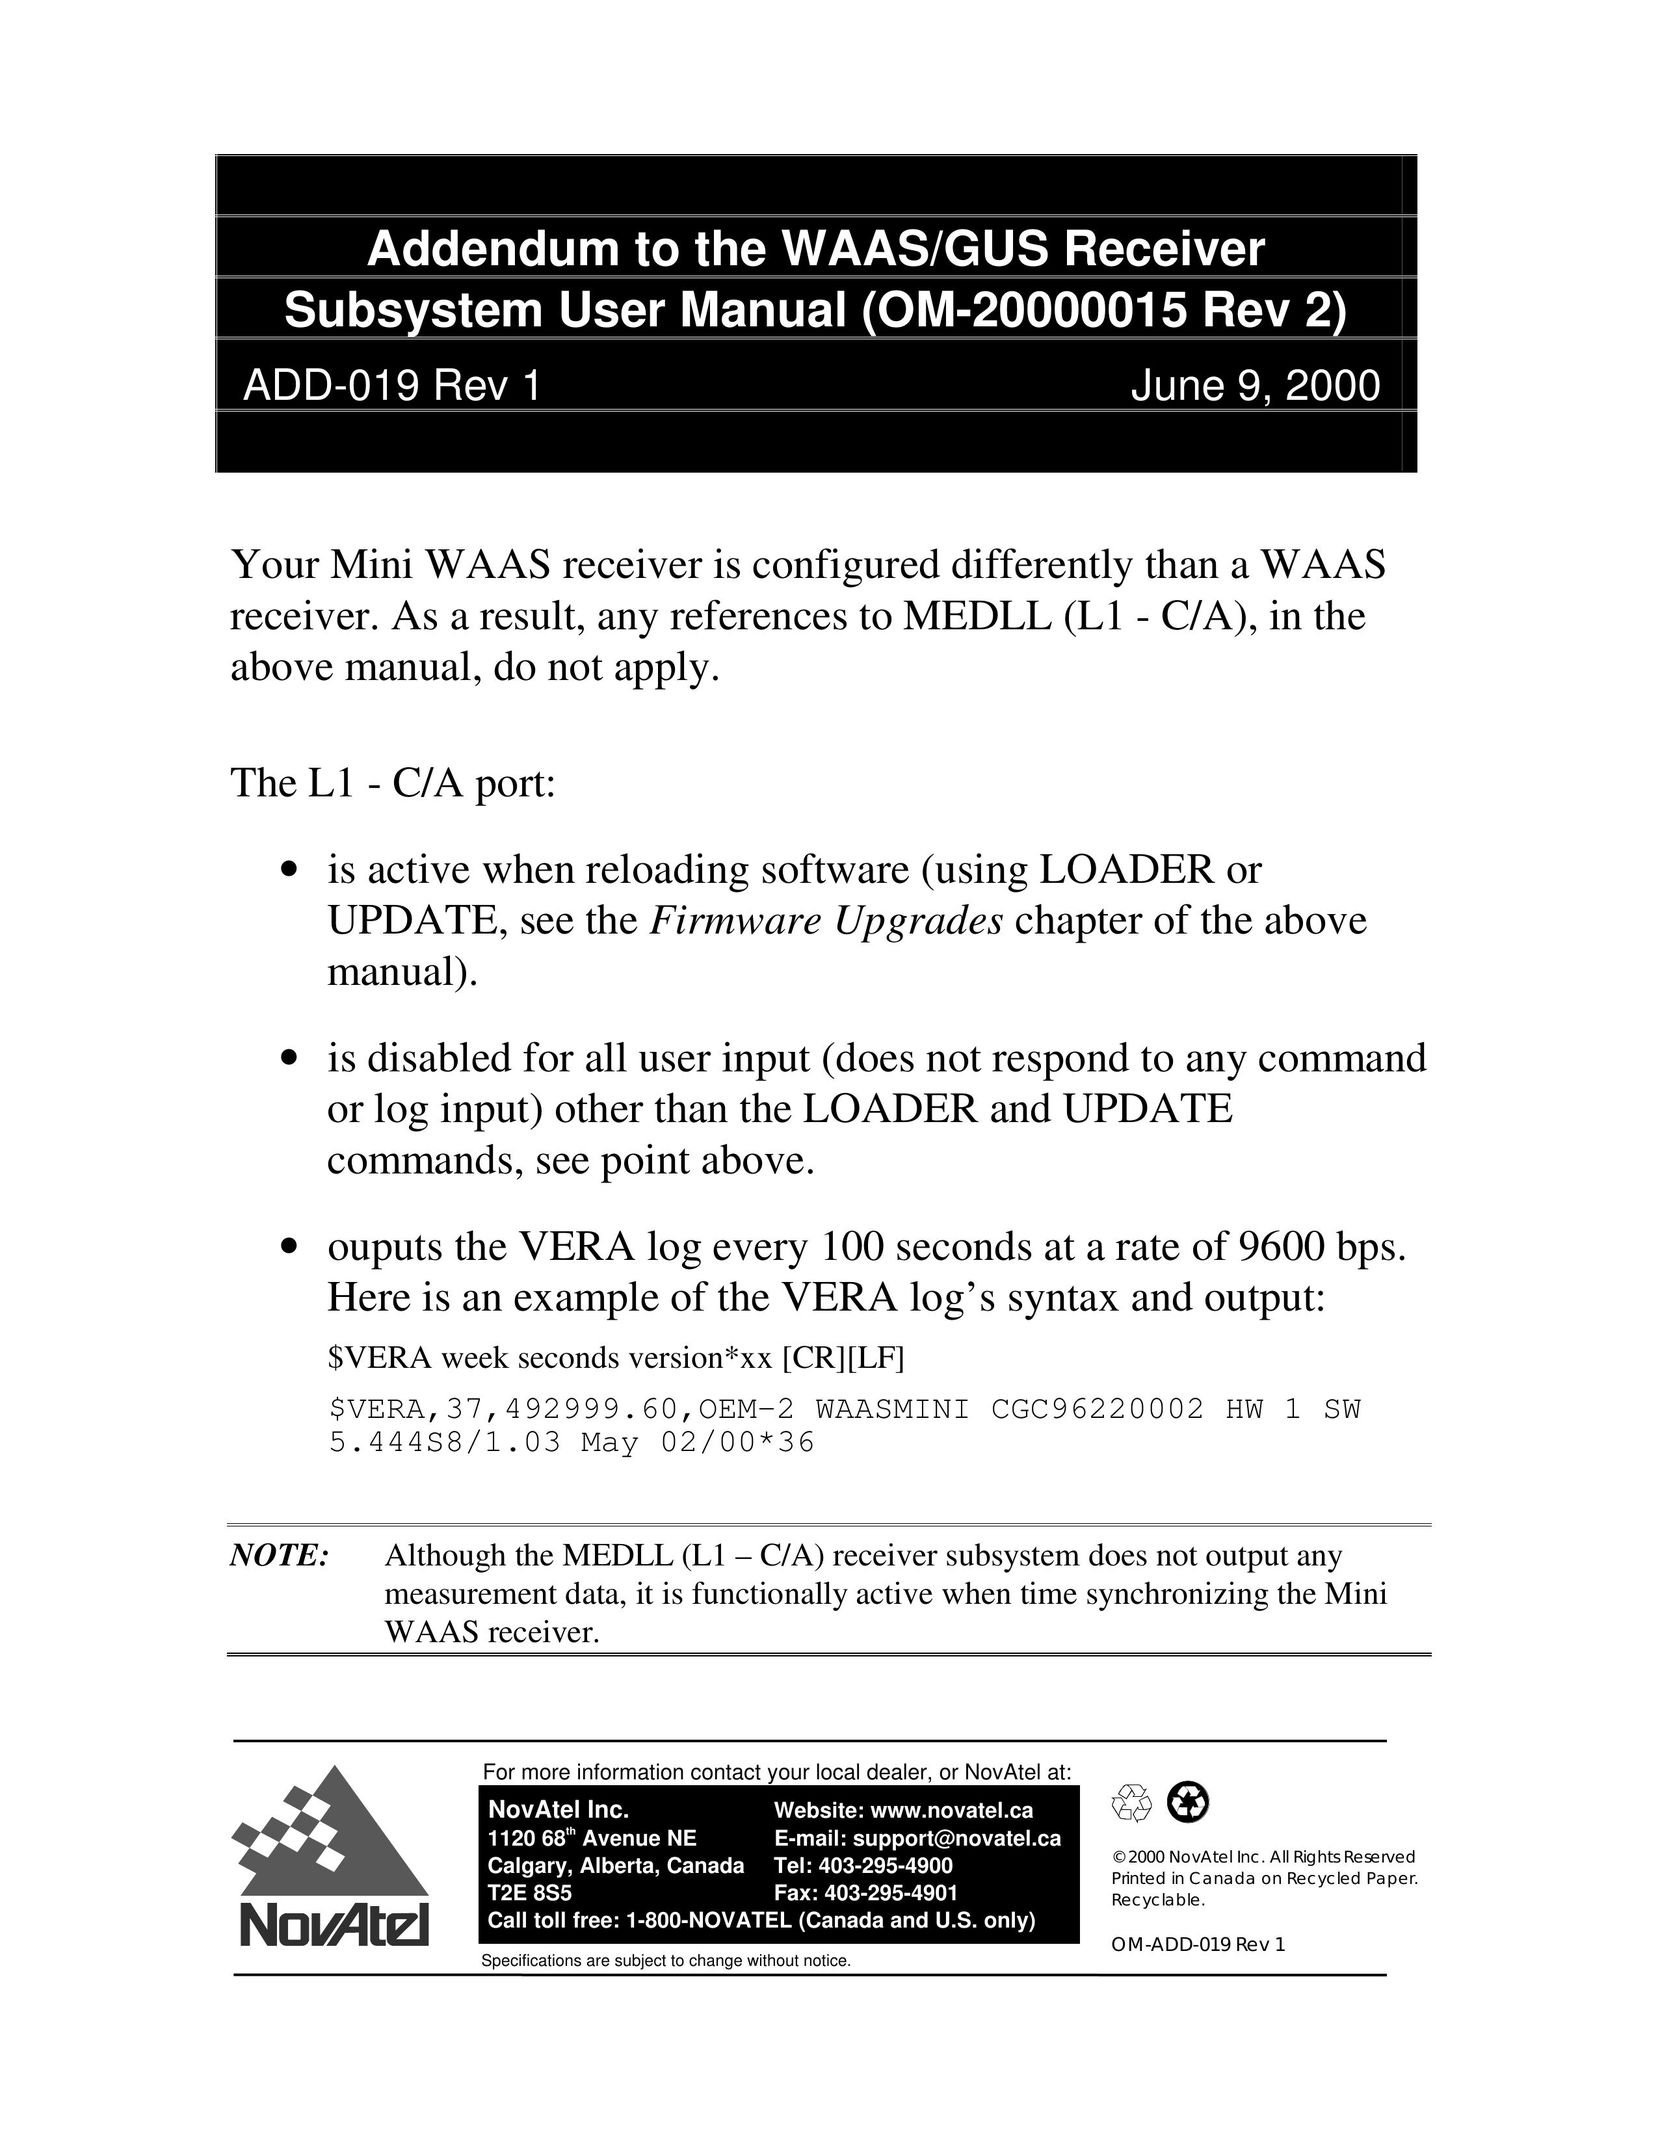 Novatel OM-20000015 Rev 2 Car Satellite TV System User Manual